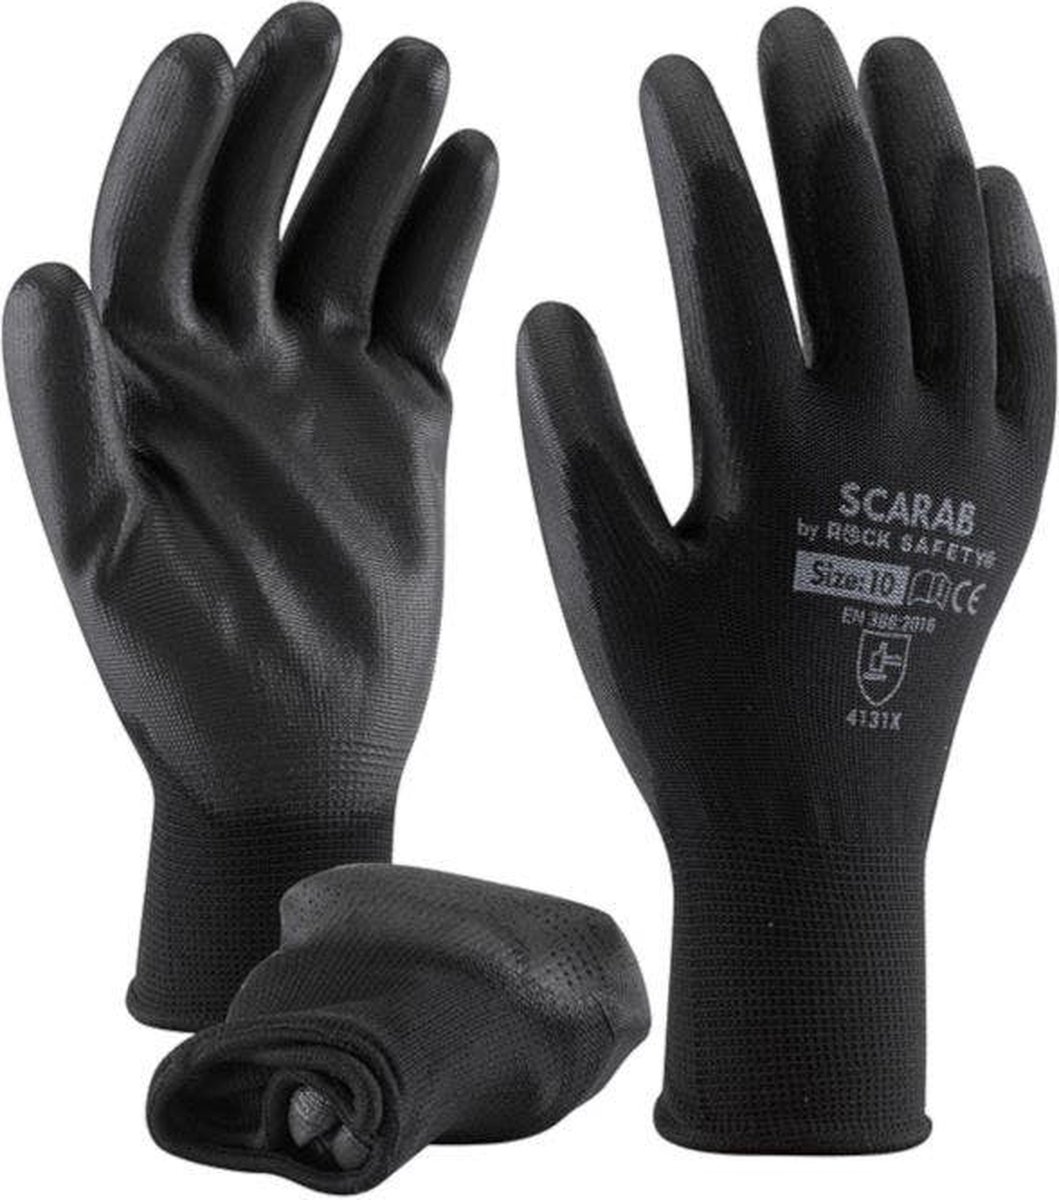 Scarab-Eco handschoenen zwart PU coating